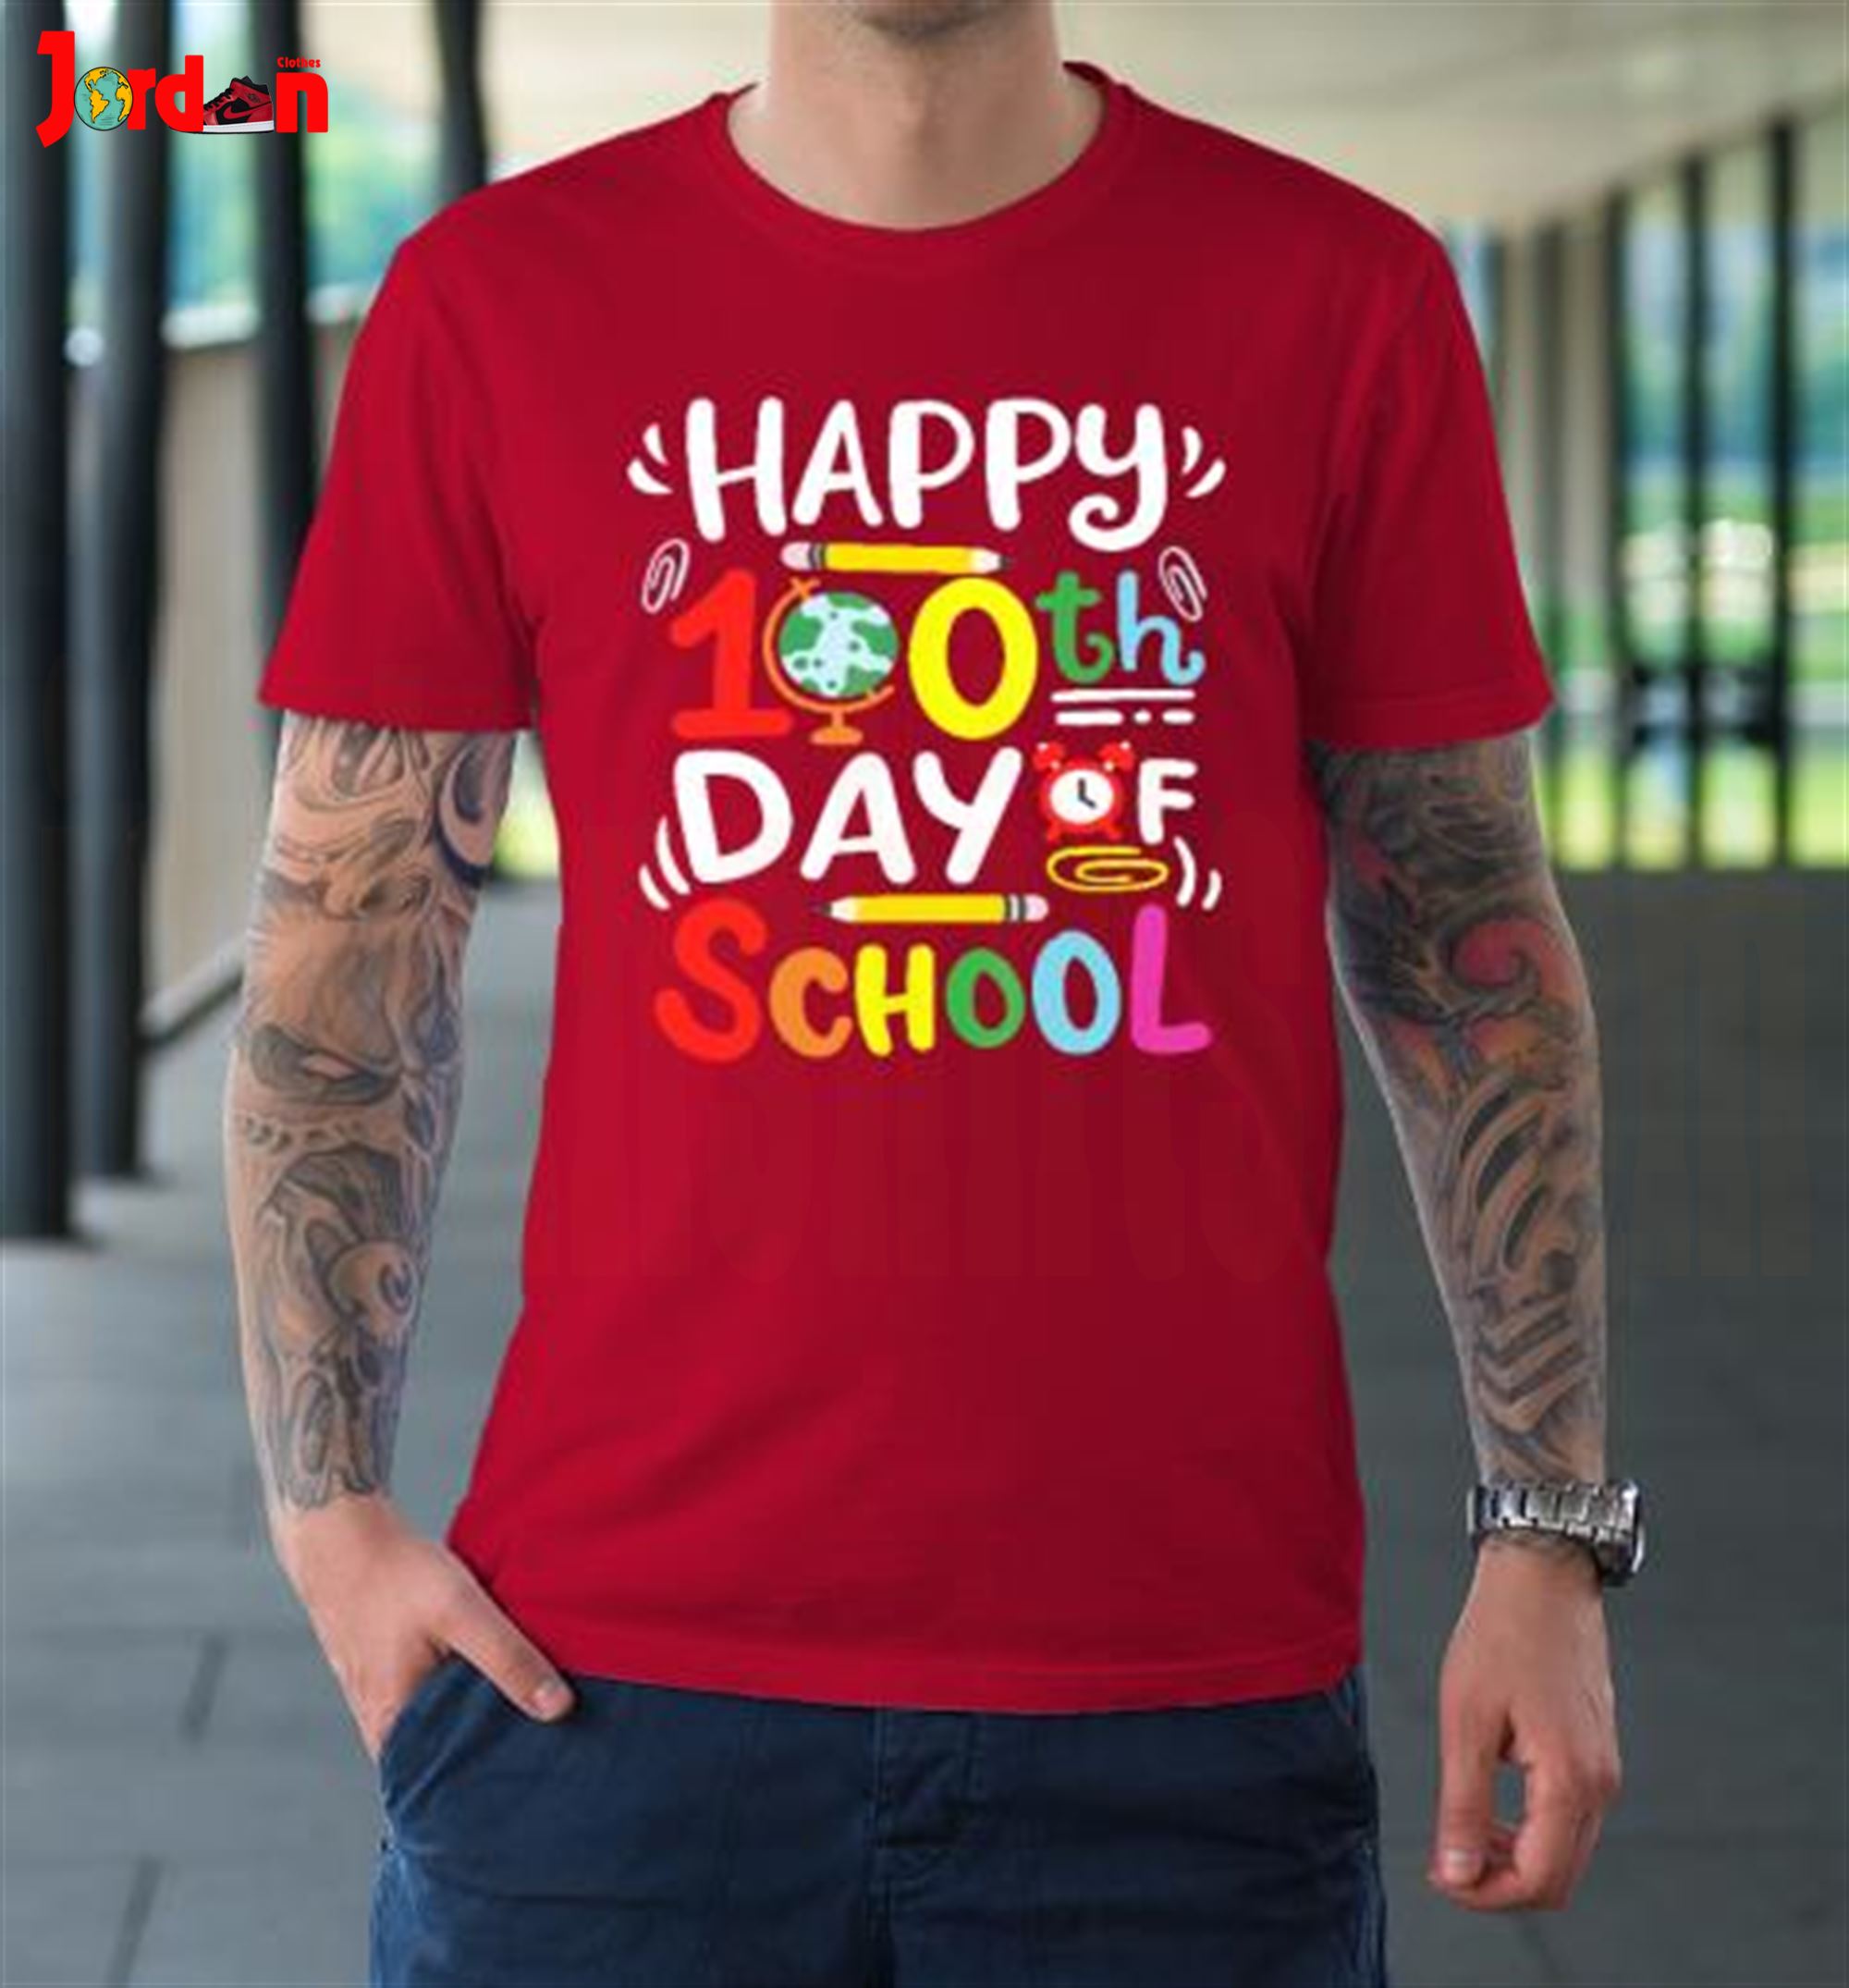 100th Day Of School Shirt Ideas